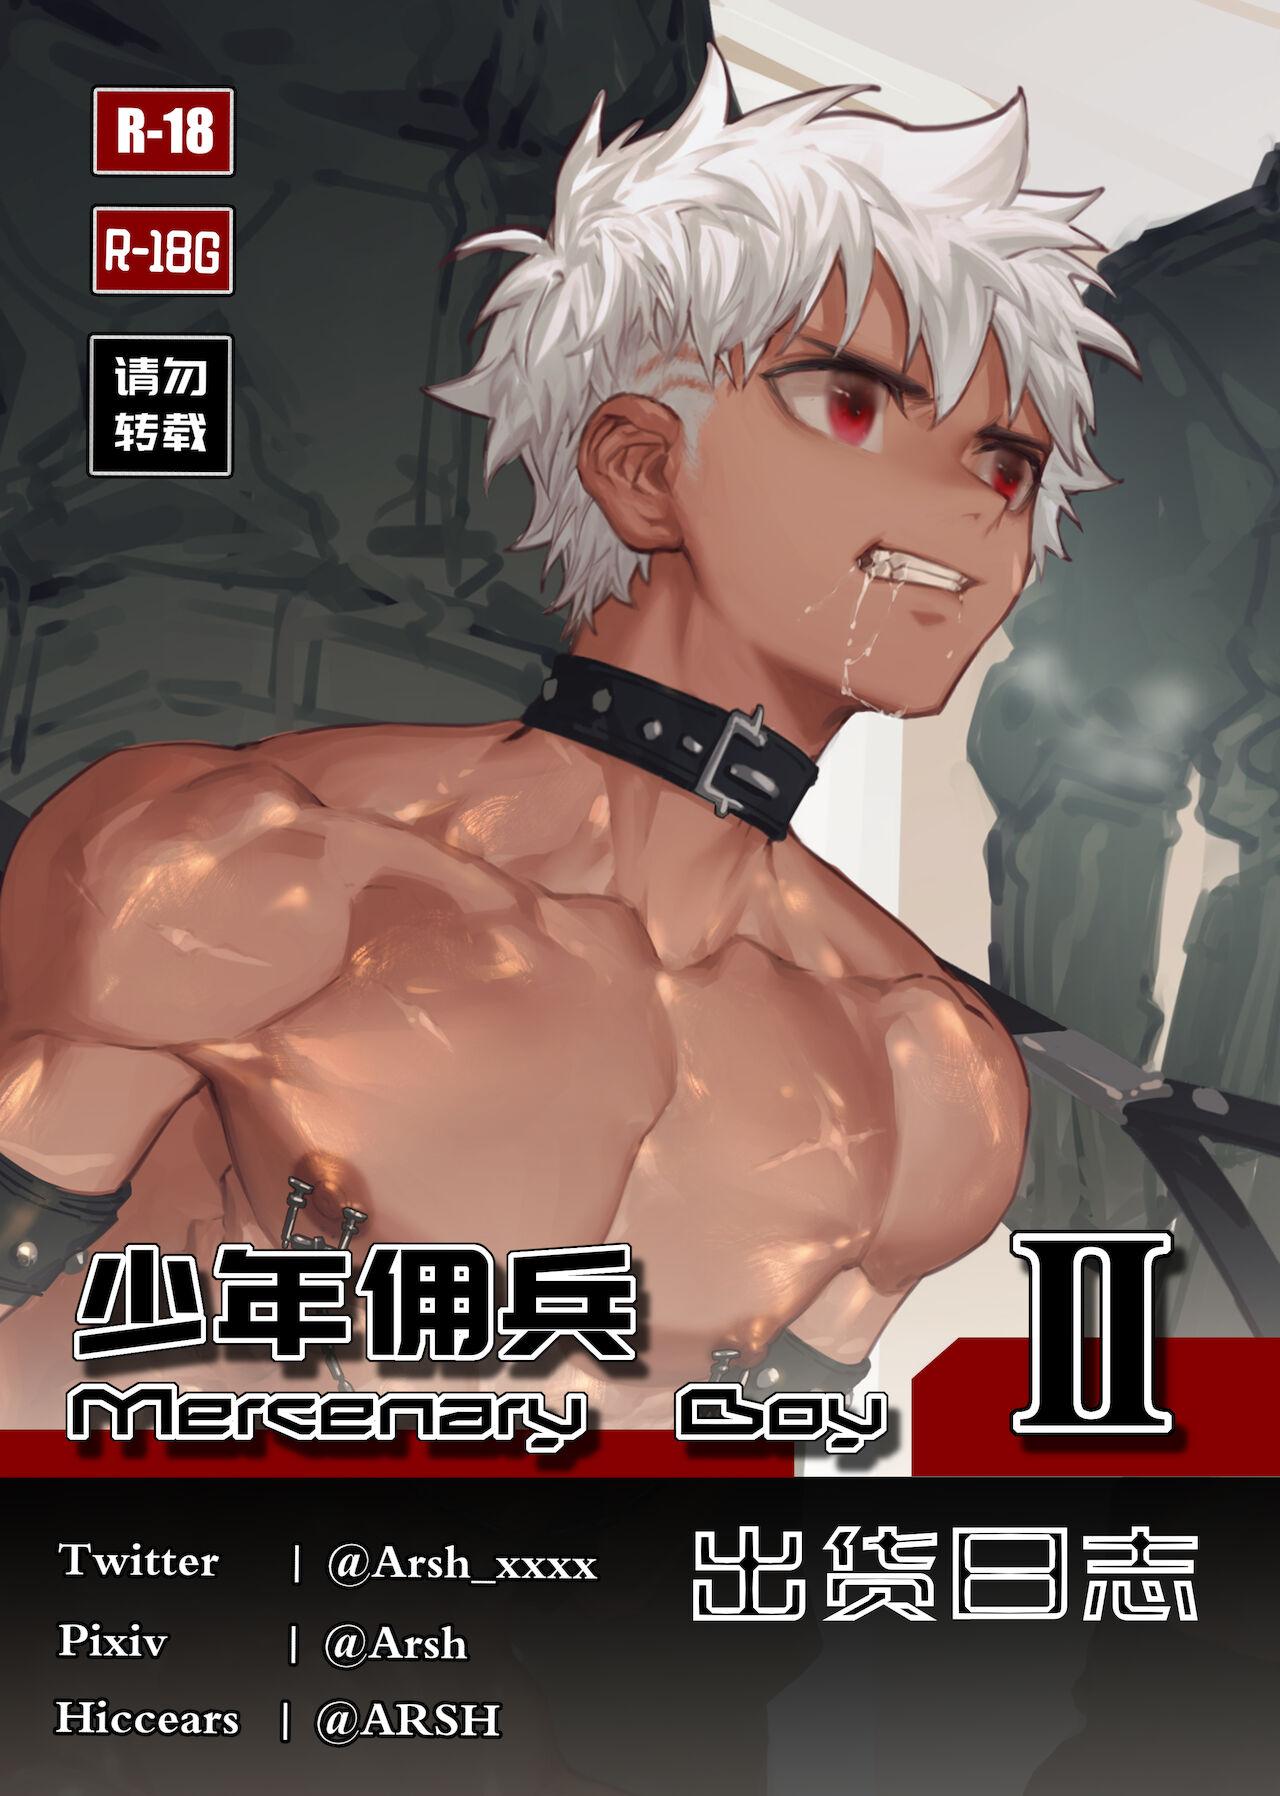 Mercenary Boy II 1